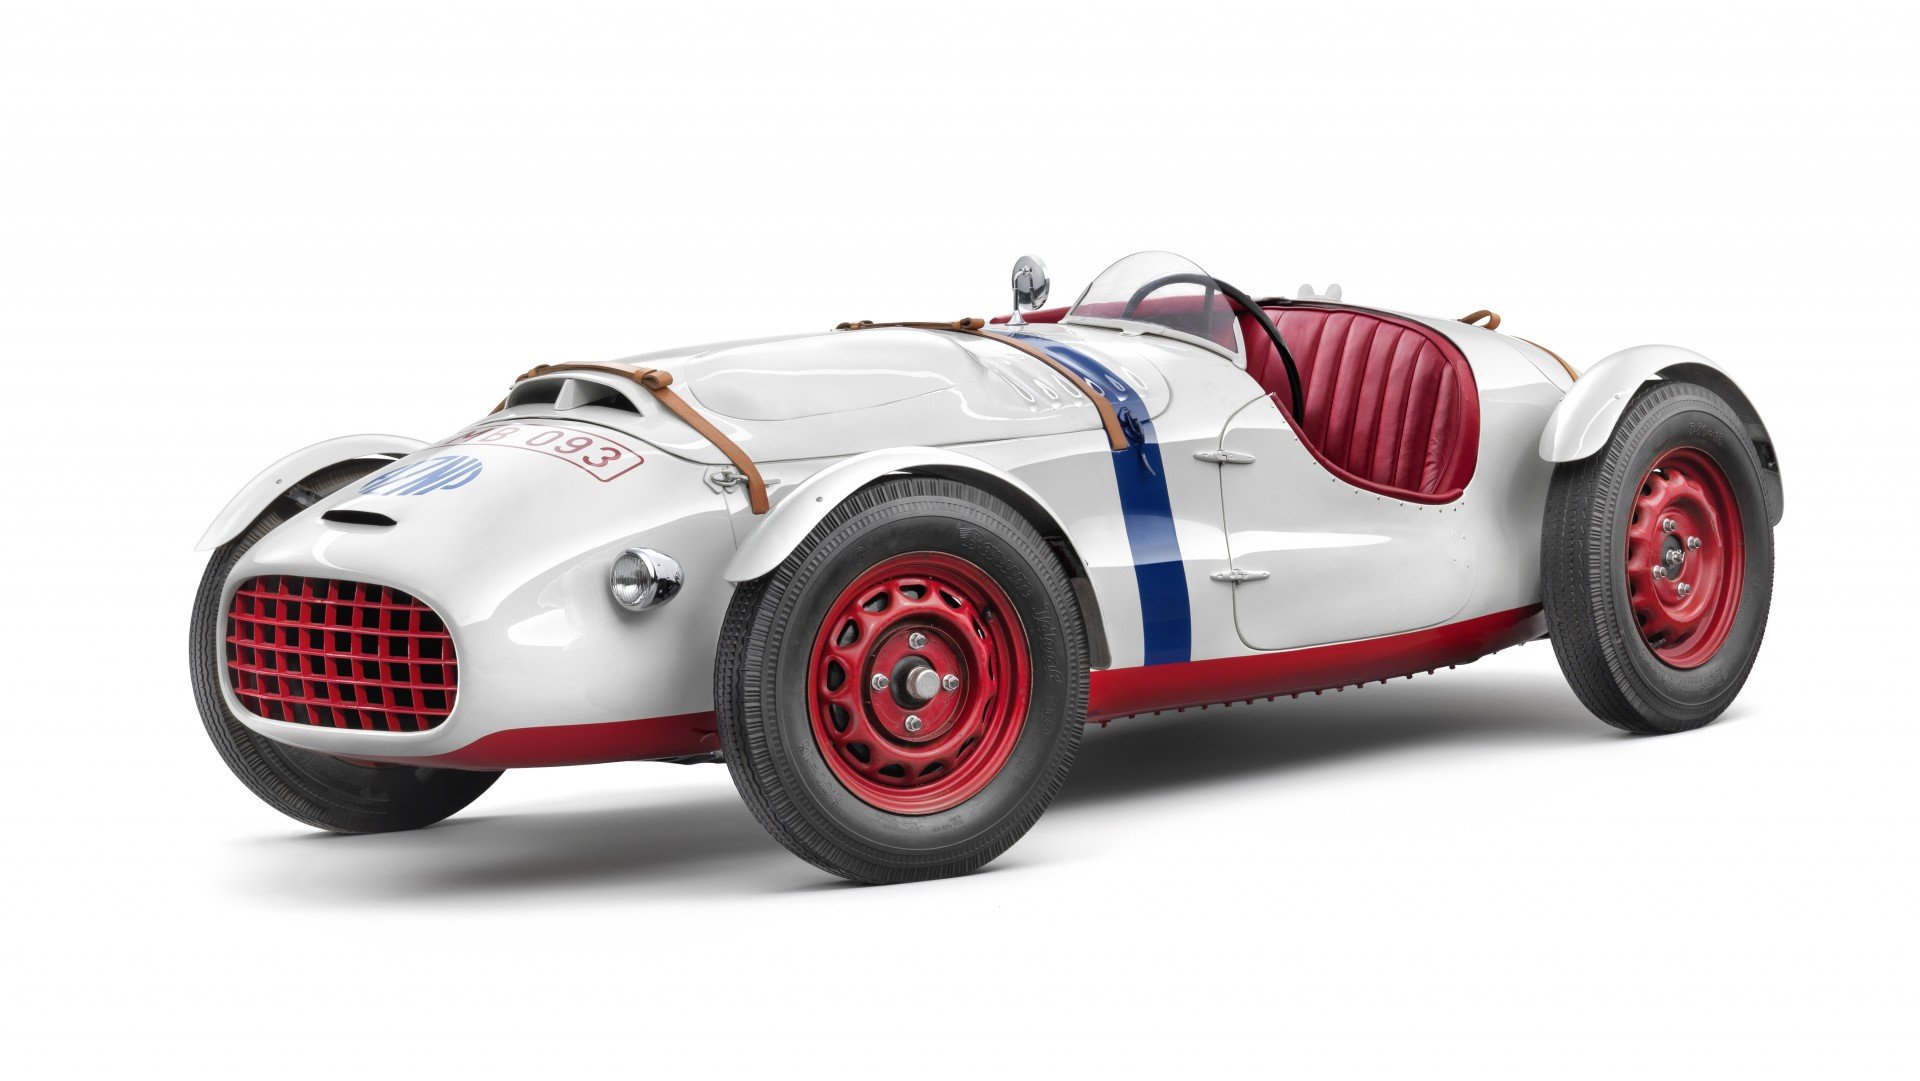 Škoda supersport typ 966 z roku 1950 patřil mezi nejlepší závodní automobily, které Škodovka vyrobila. Vůz poháněl řadový kapalinou chlazený čtyřválec OHV o objemu 1 089 cm3, který byl umístěný podélně za přední nápravou. Původně dával jen 37 kW, na závodních tratích debutoval v květnu 1950, dosahoval rychlosti až 140 km/h.